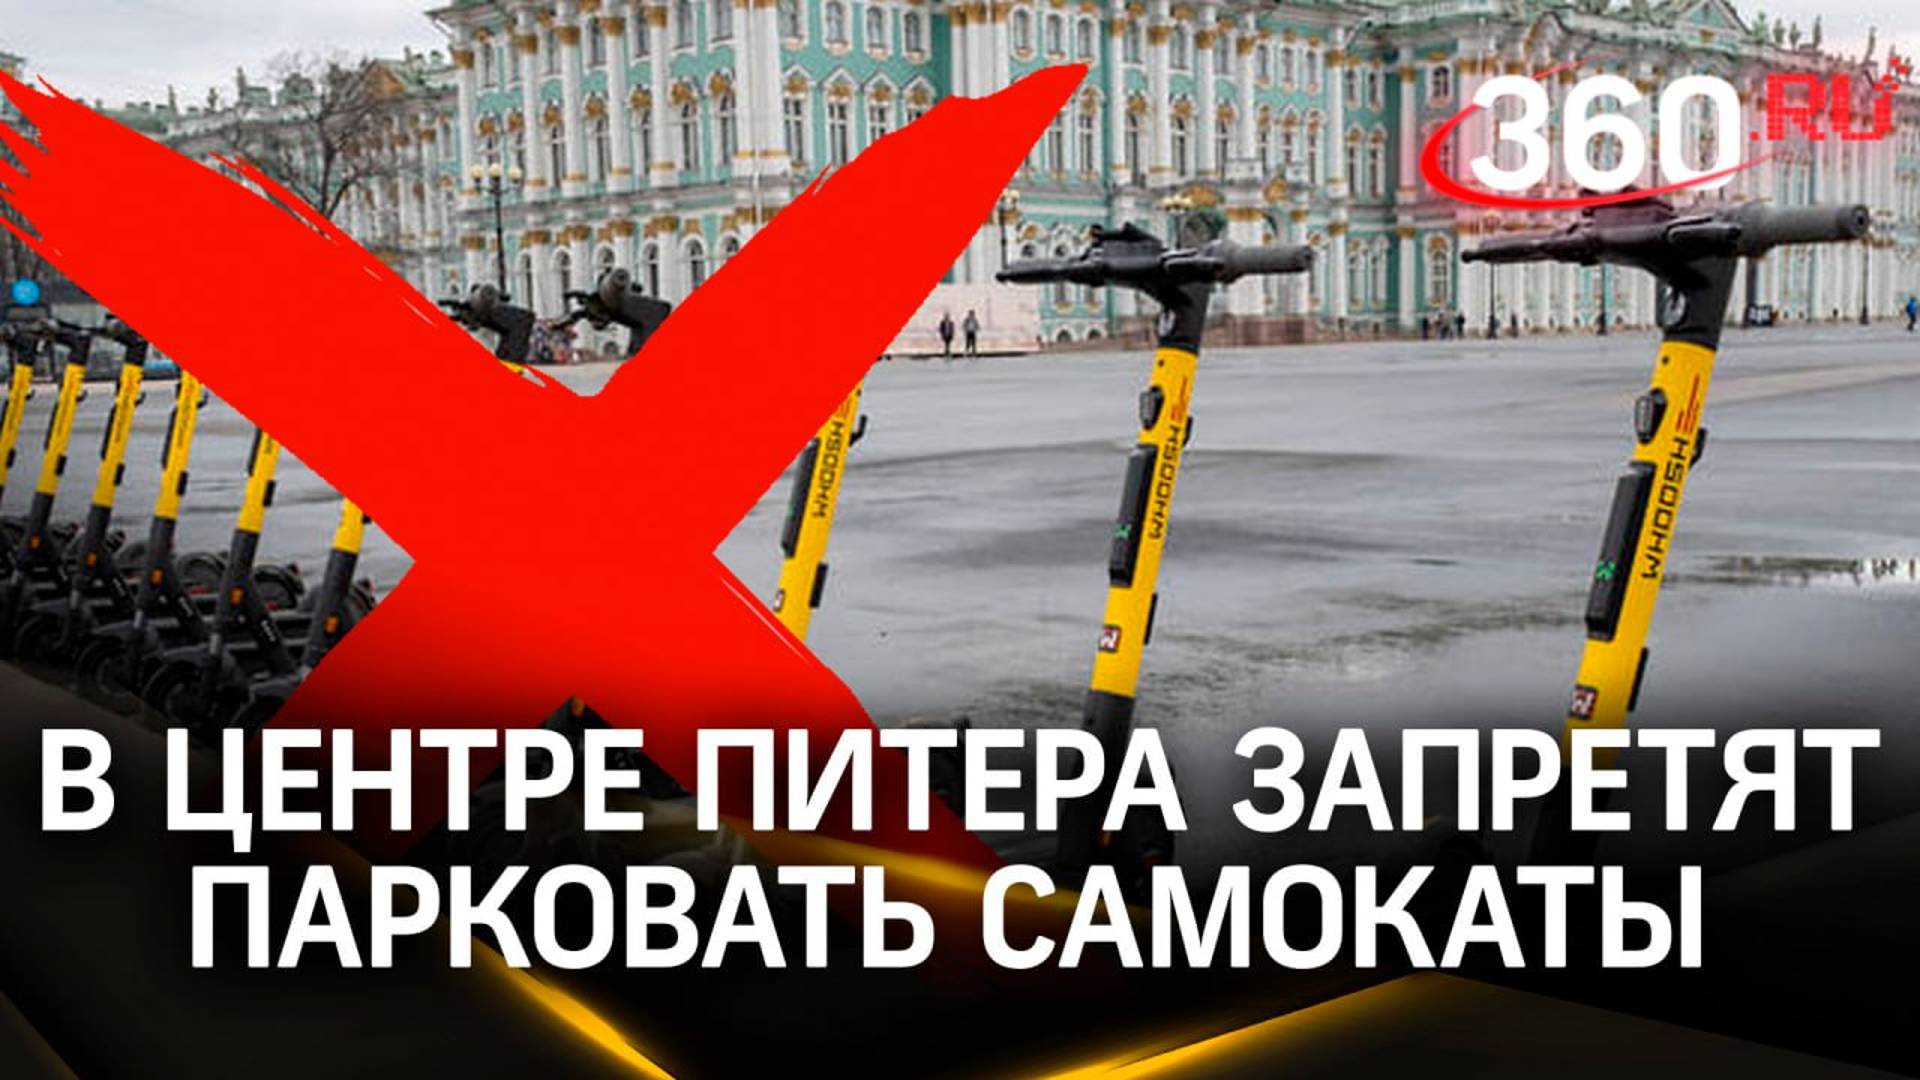 Электросамокаты запретили в Петербурге - с 1 августа их там не останется